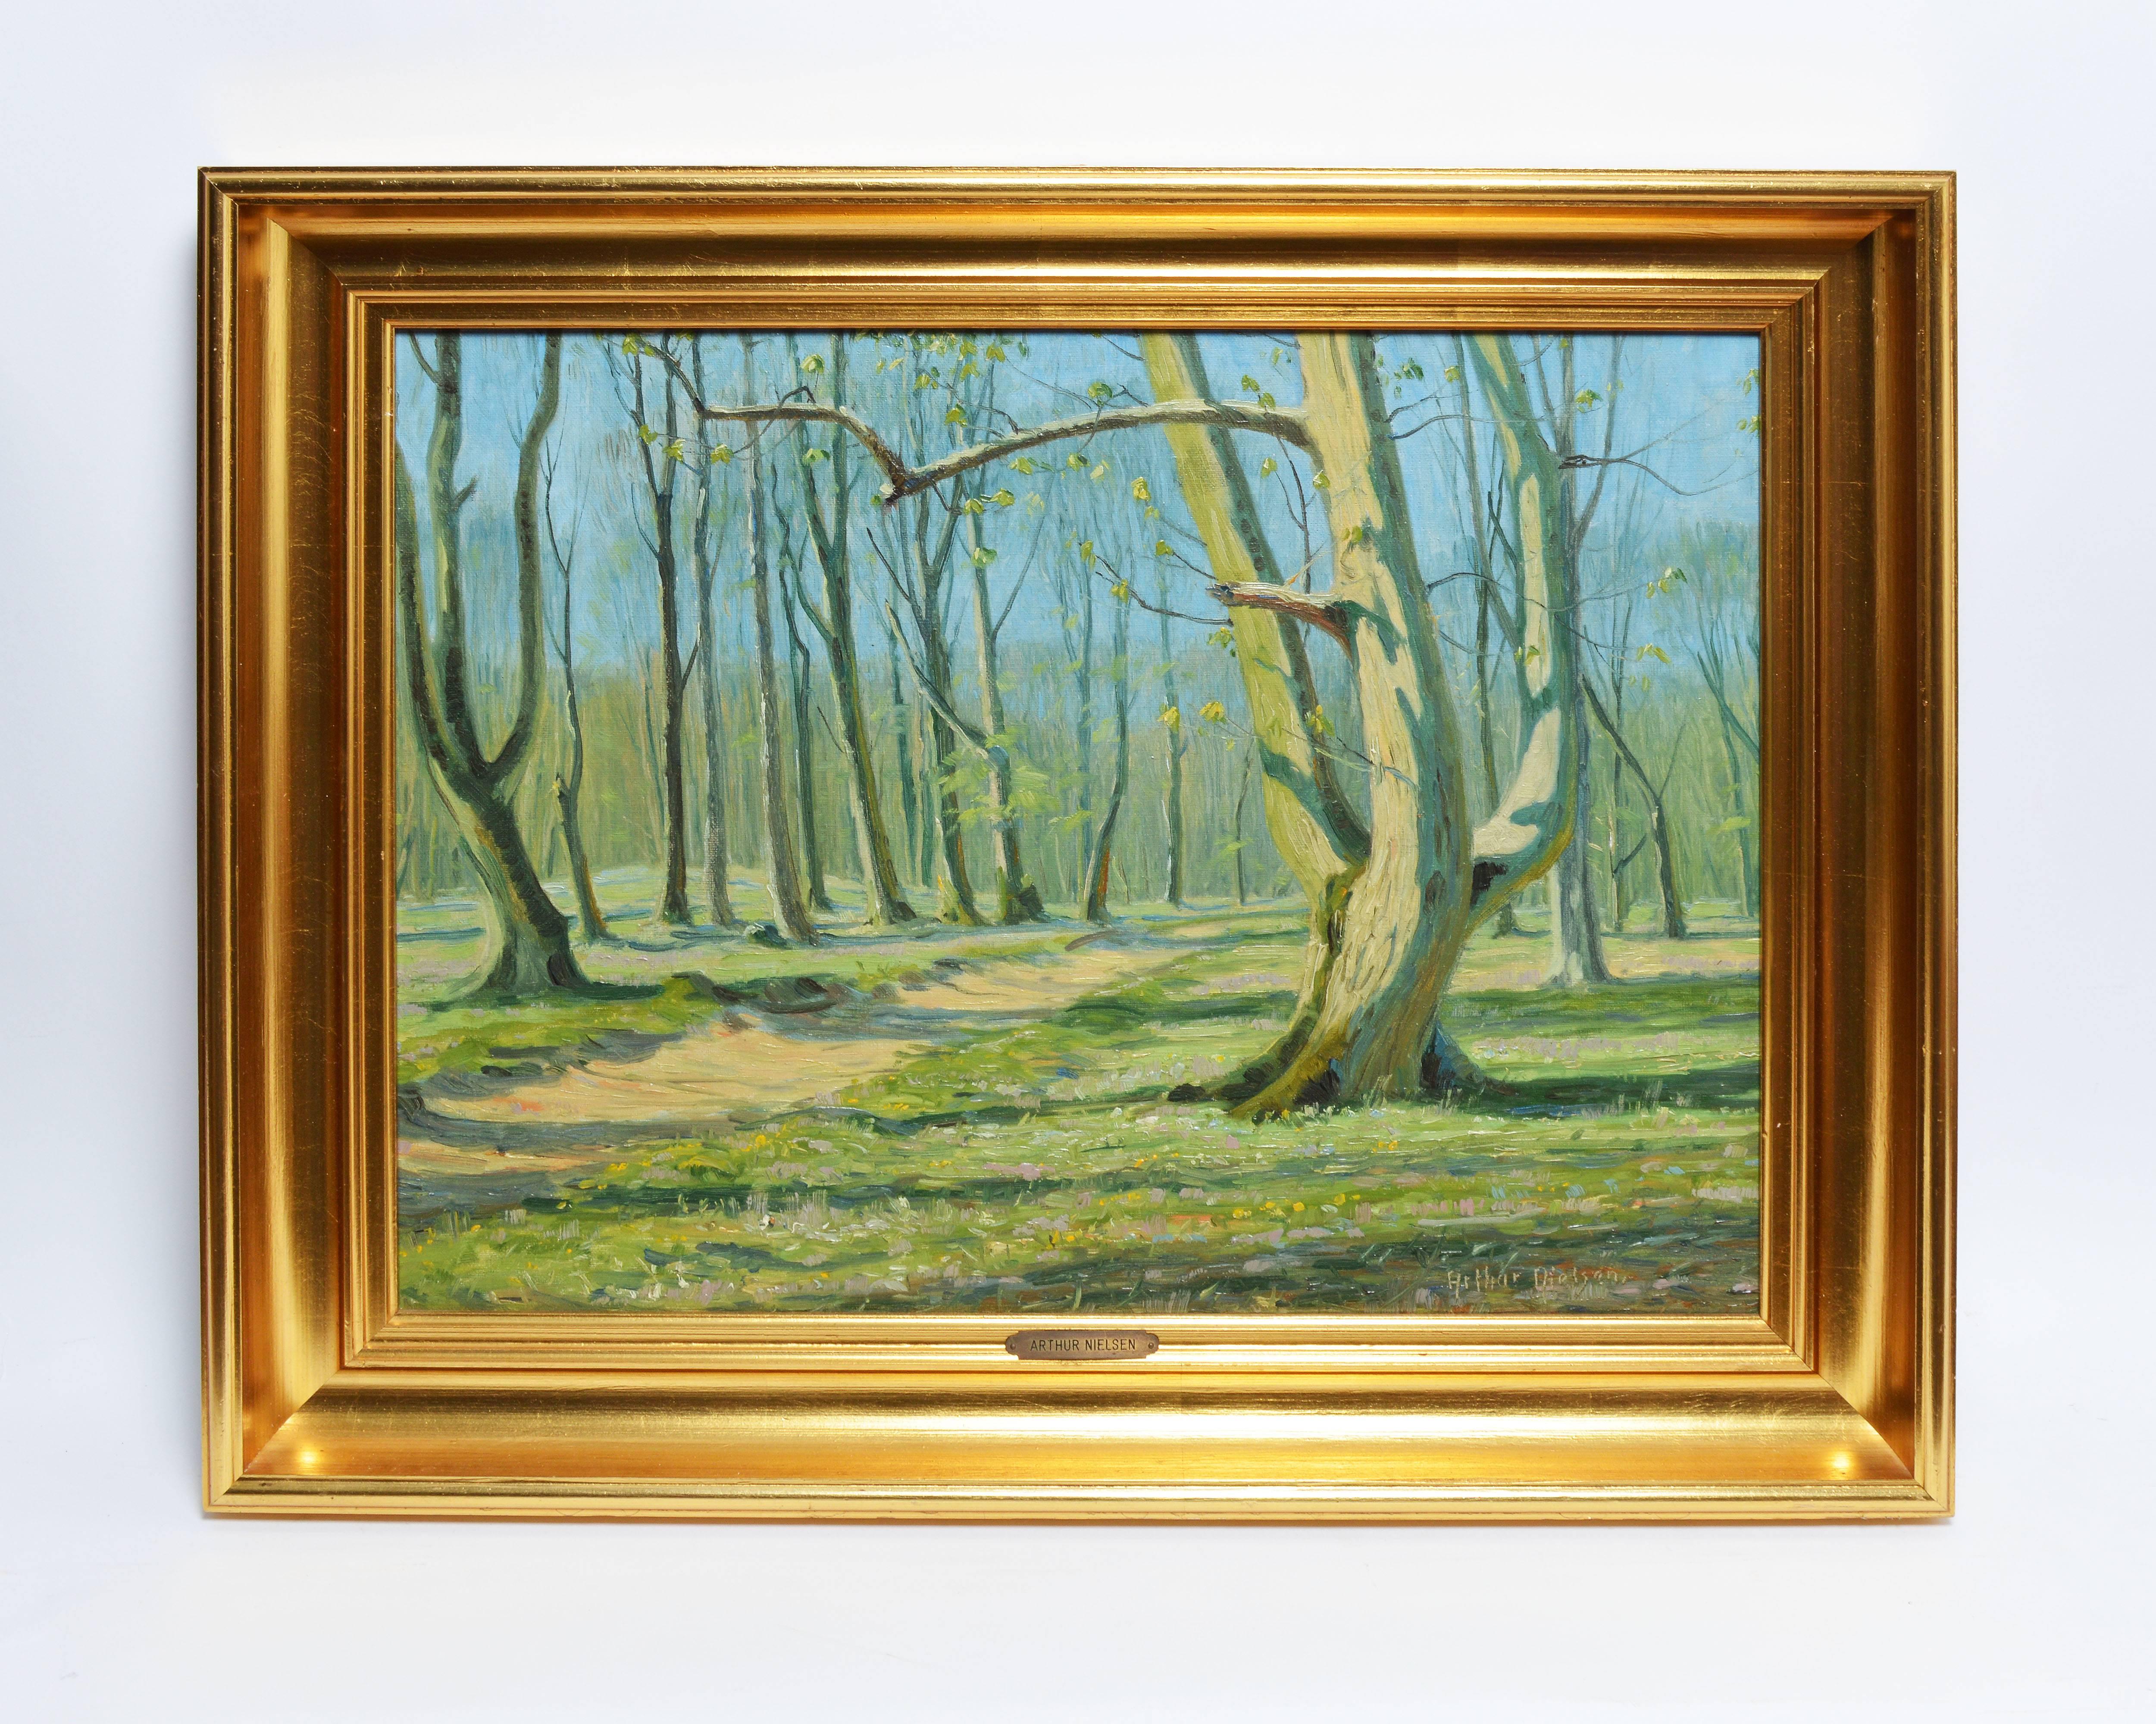 Sunlit Danish Forest by Arthur Nielsen 1